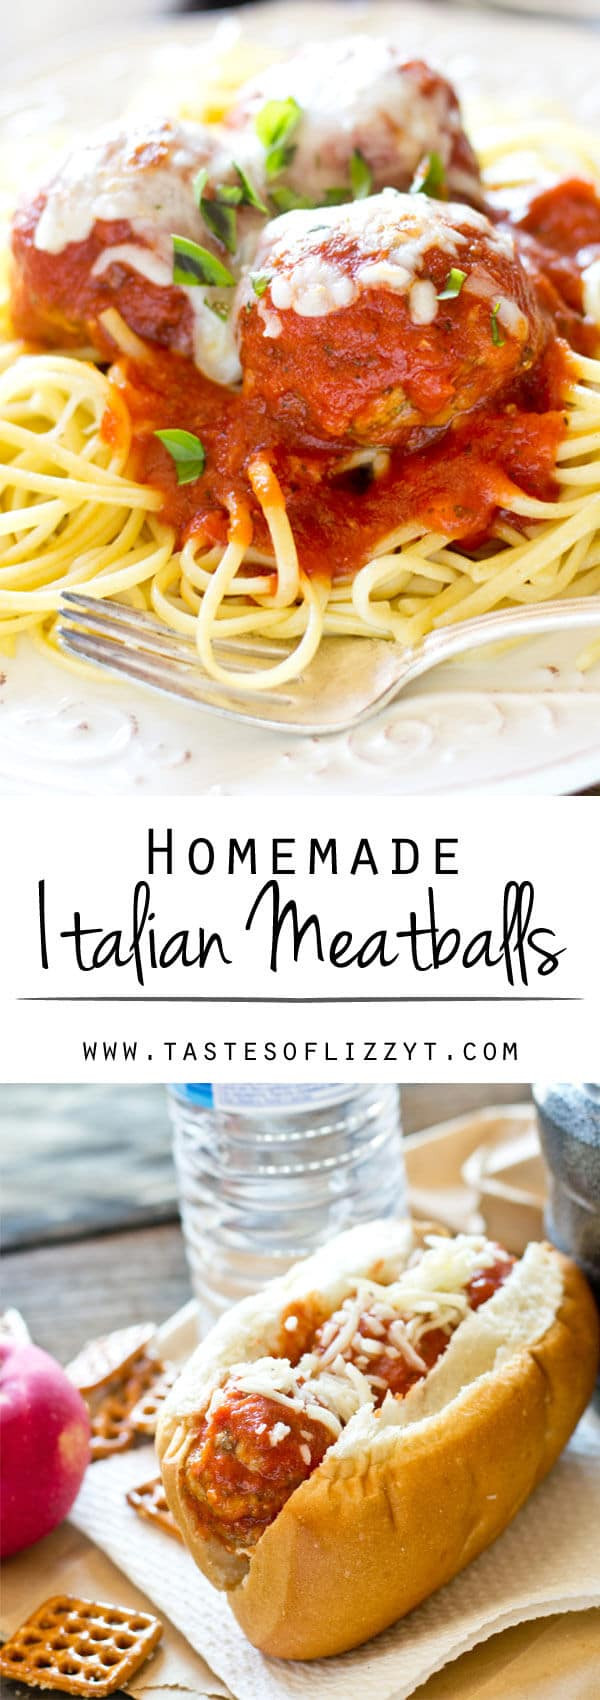 Italian Spaghetti And Meatballs Recipes
 Homemade Italian Meatballs Recipe for Authentic Italian